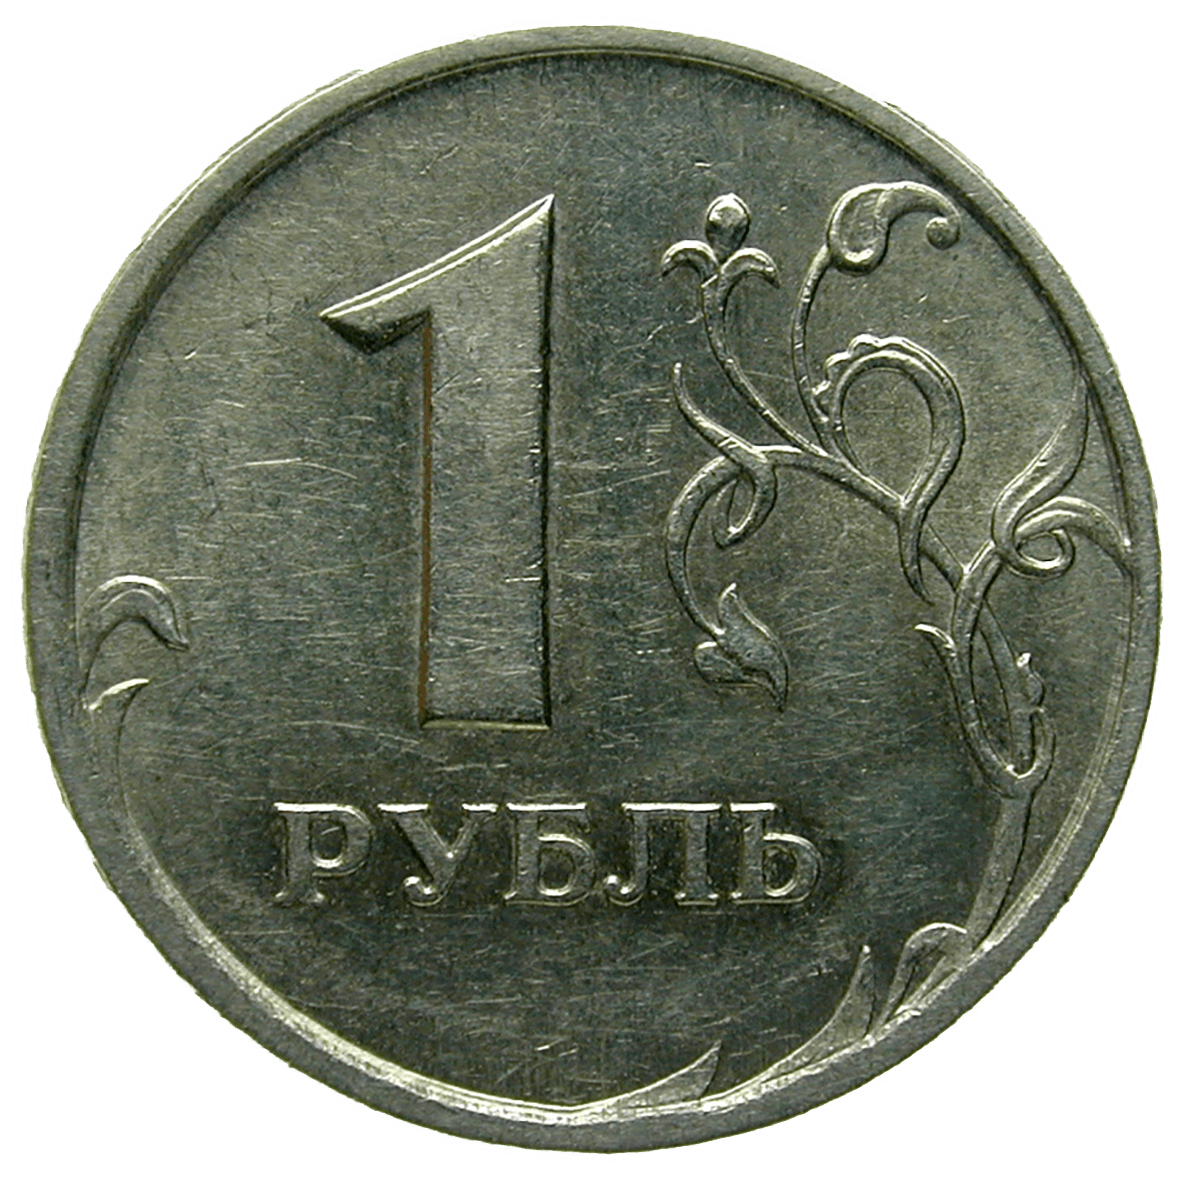 Russische Föderation, 1 Rubel 1997 (reverse)